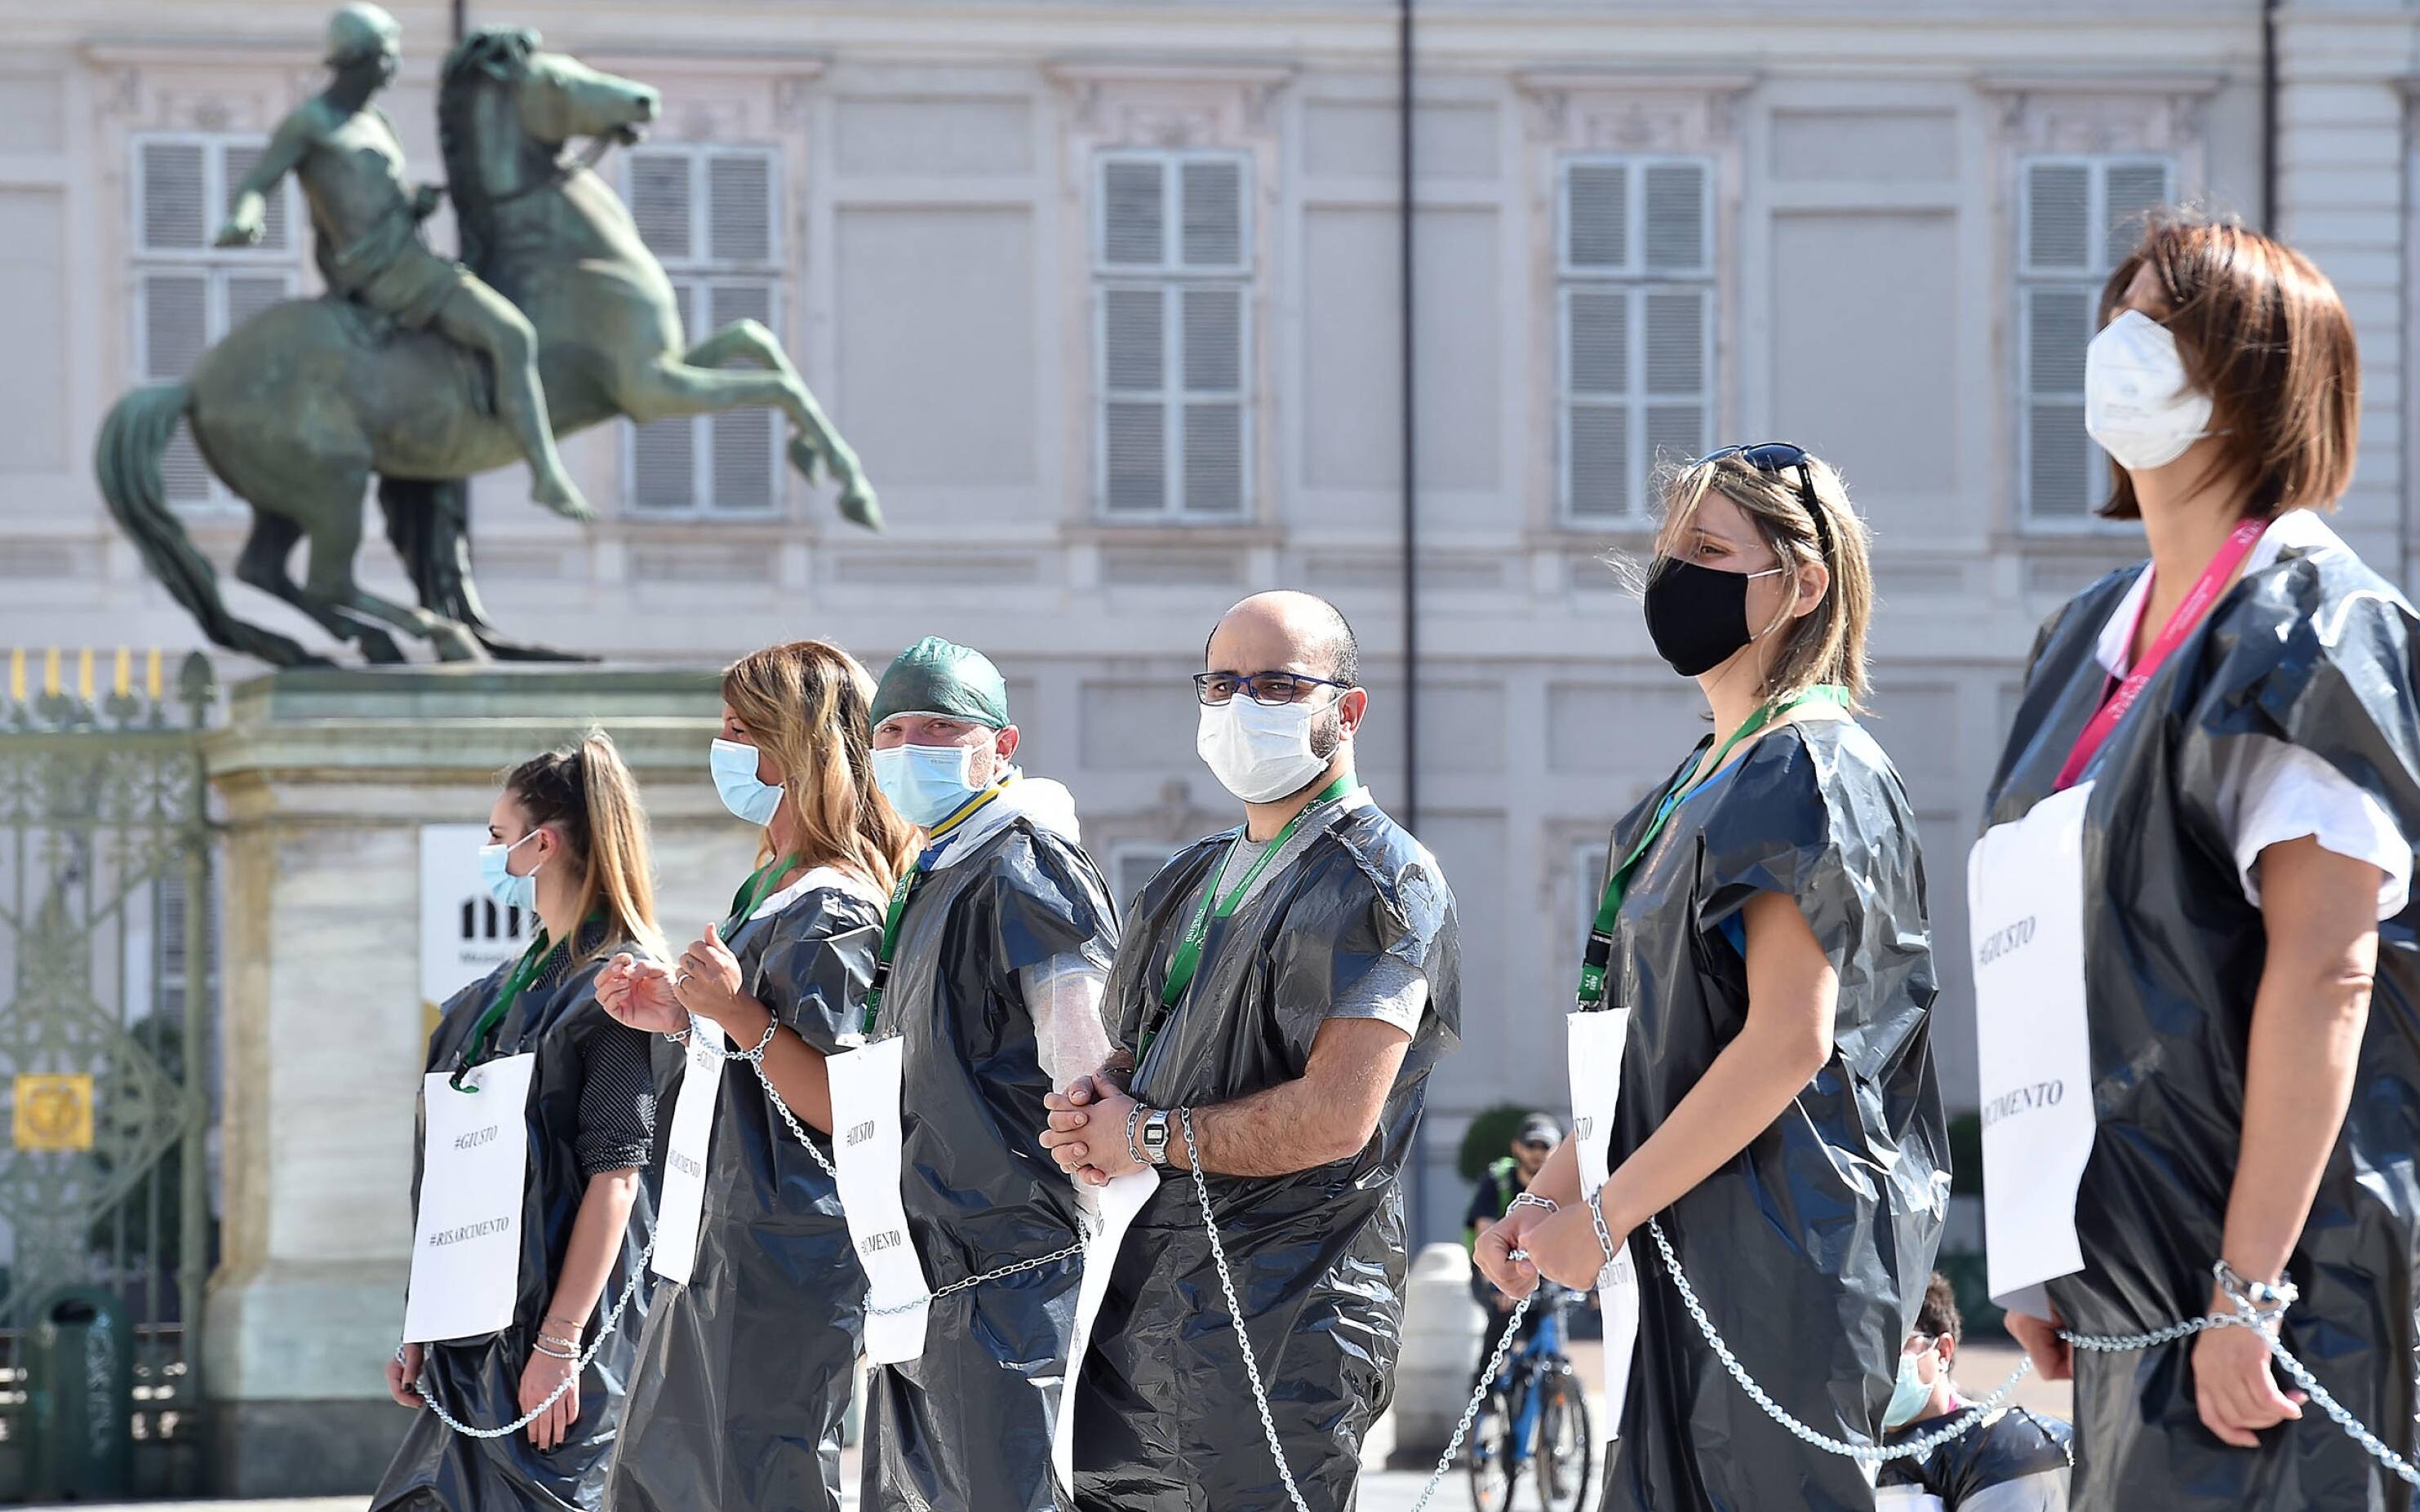 La protesta degli infermieri del Nursind in piazza Castello, a Torino